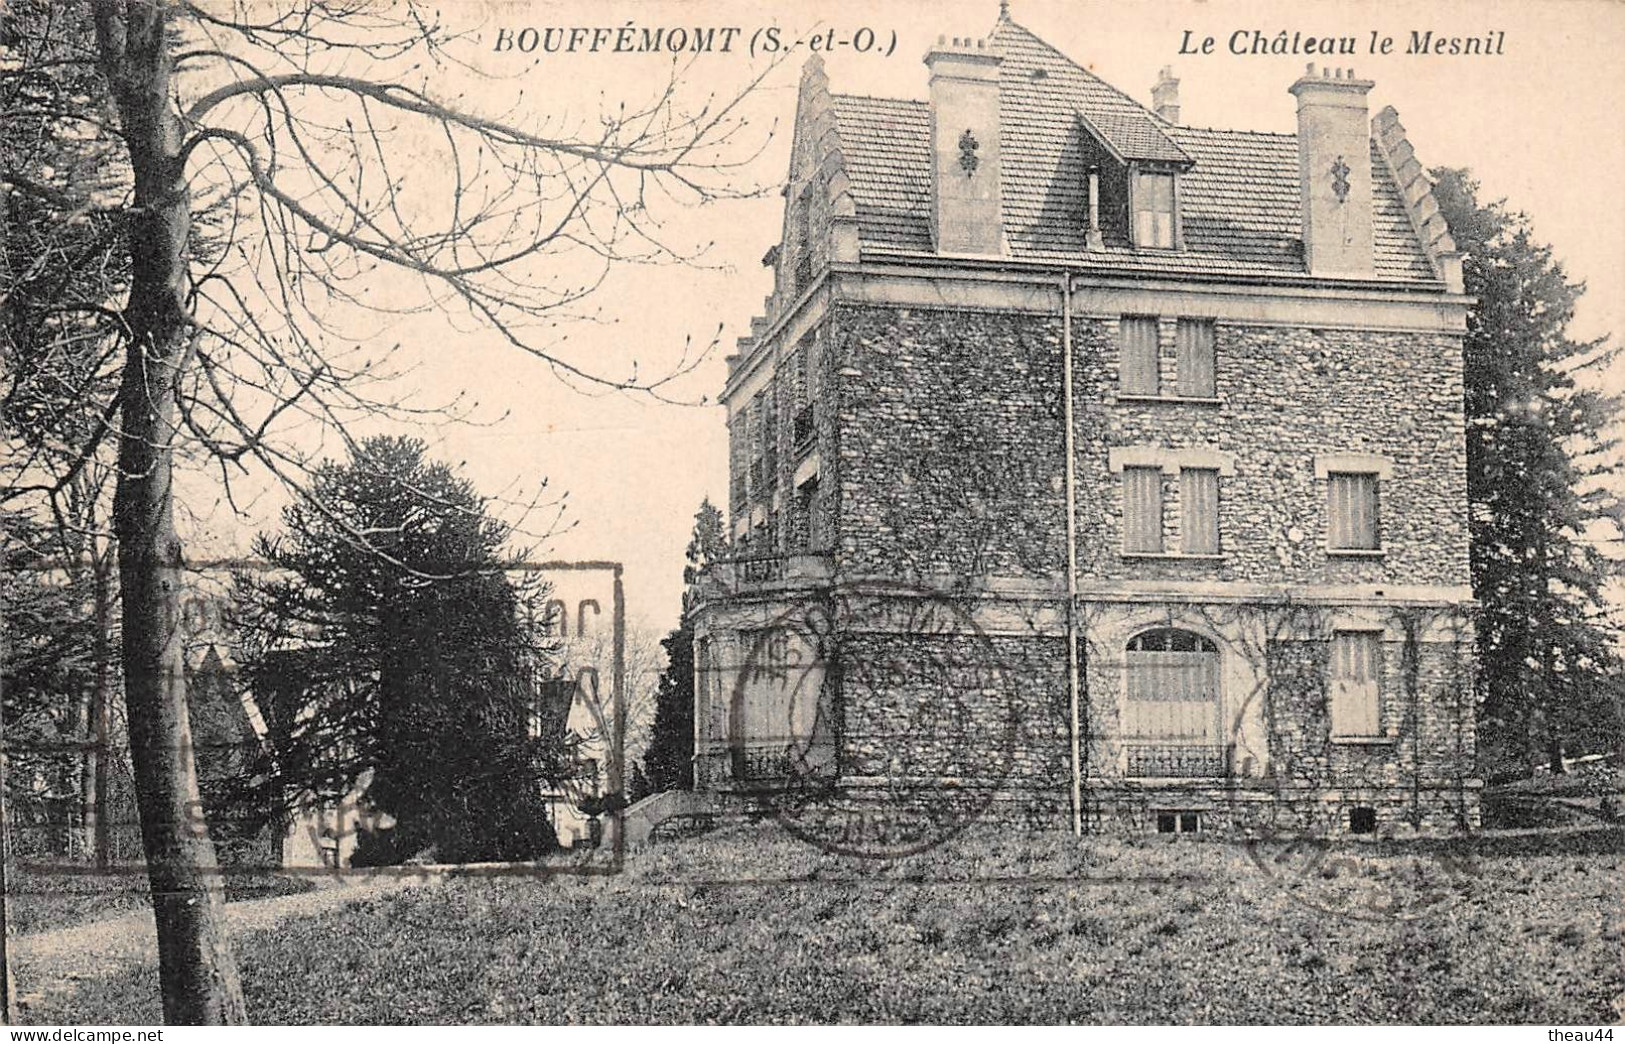 BOUFFEMONT - Lot de 5 Cartes - Chateaux - Le Pré-sous-Ville - Le Mesnil - De la Chasse - Entrée du Pays